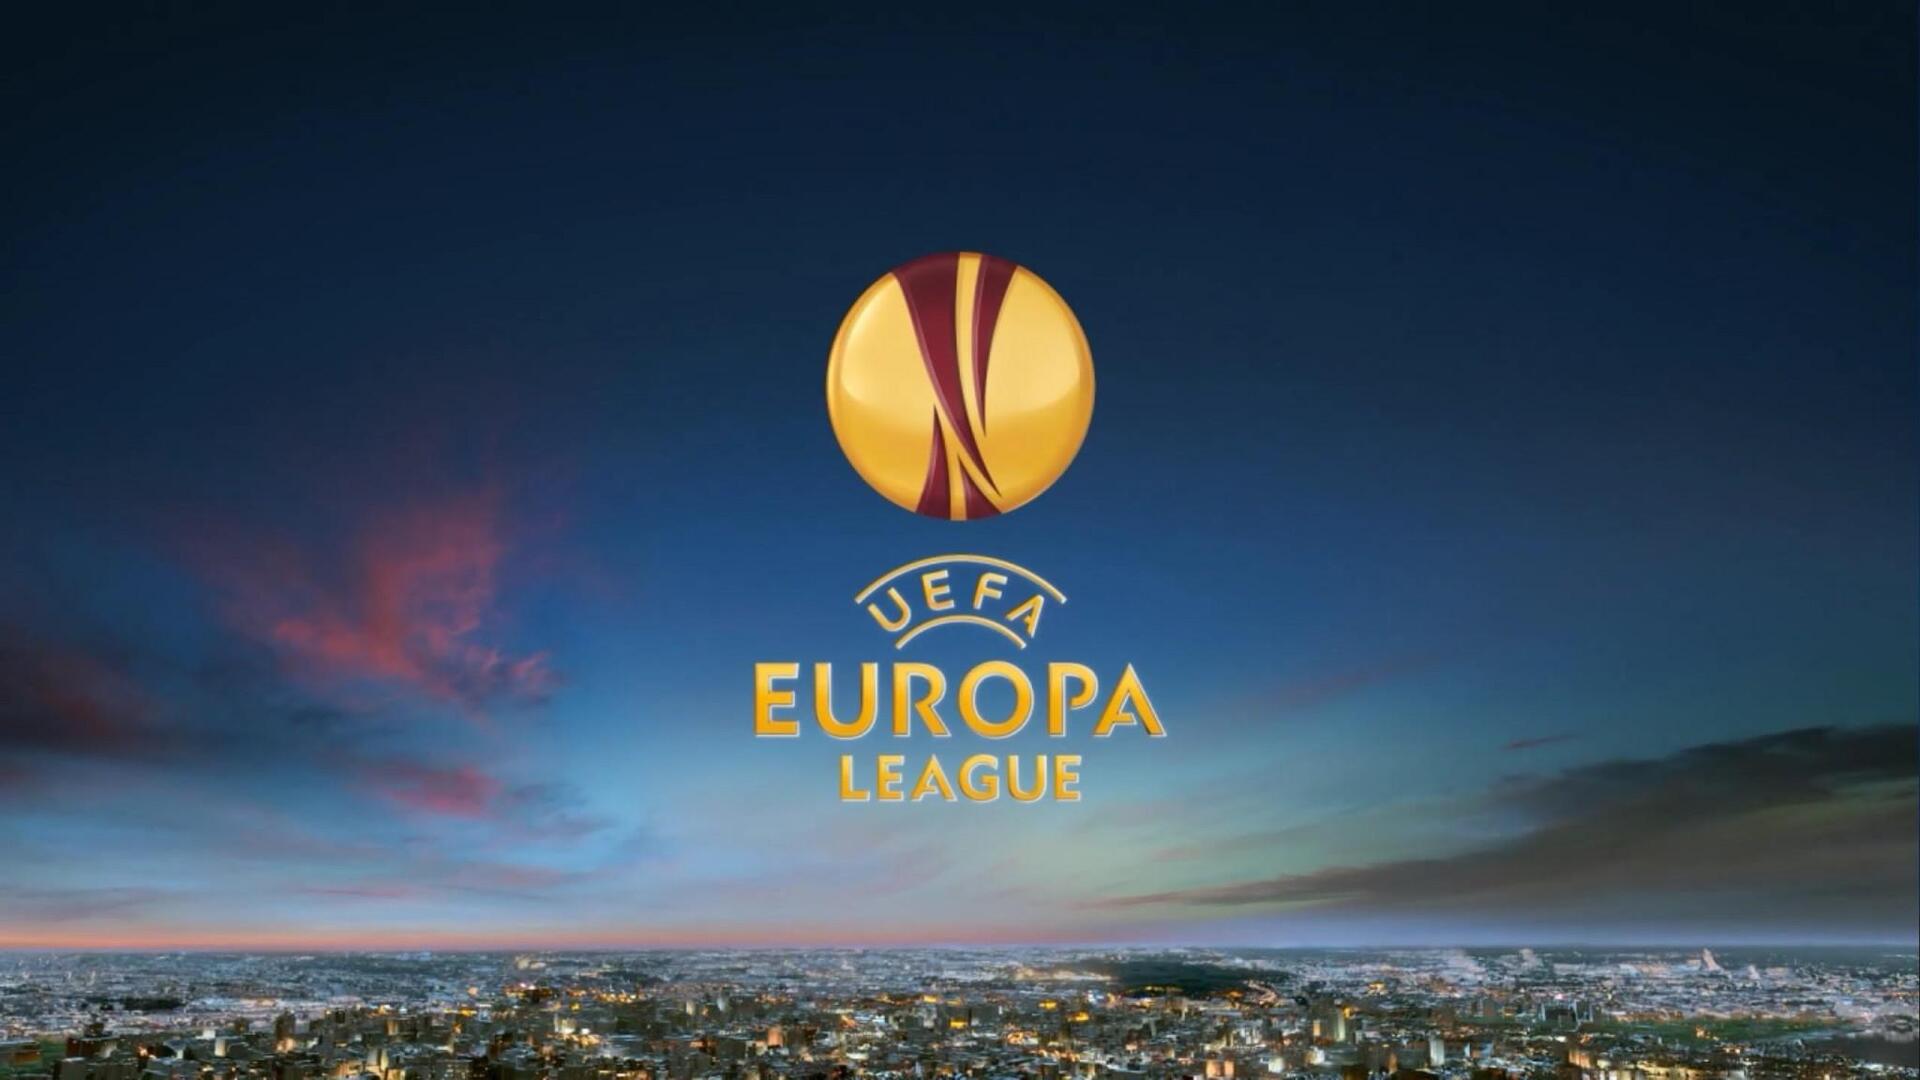 http://www.eleftherostypos.gr/wp-content/uploads/2016/08/europa-league-1000-2.jpg